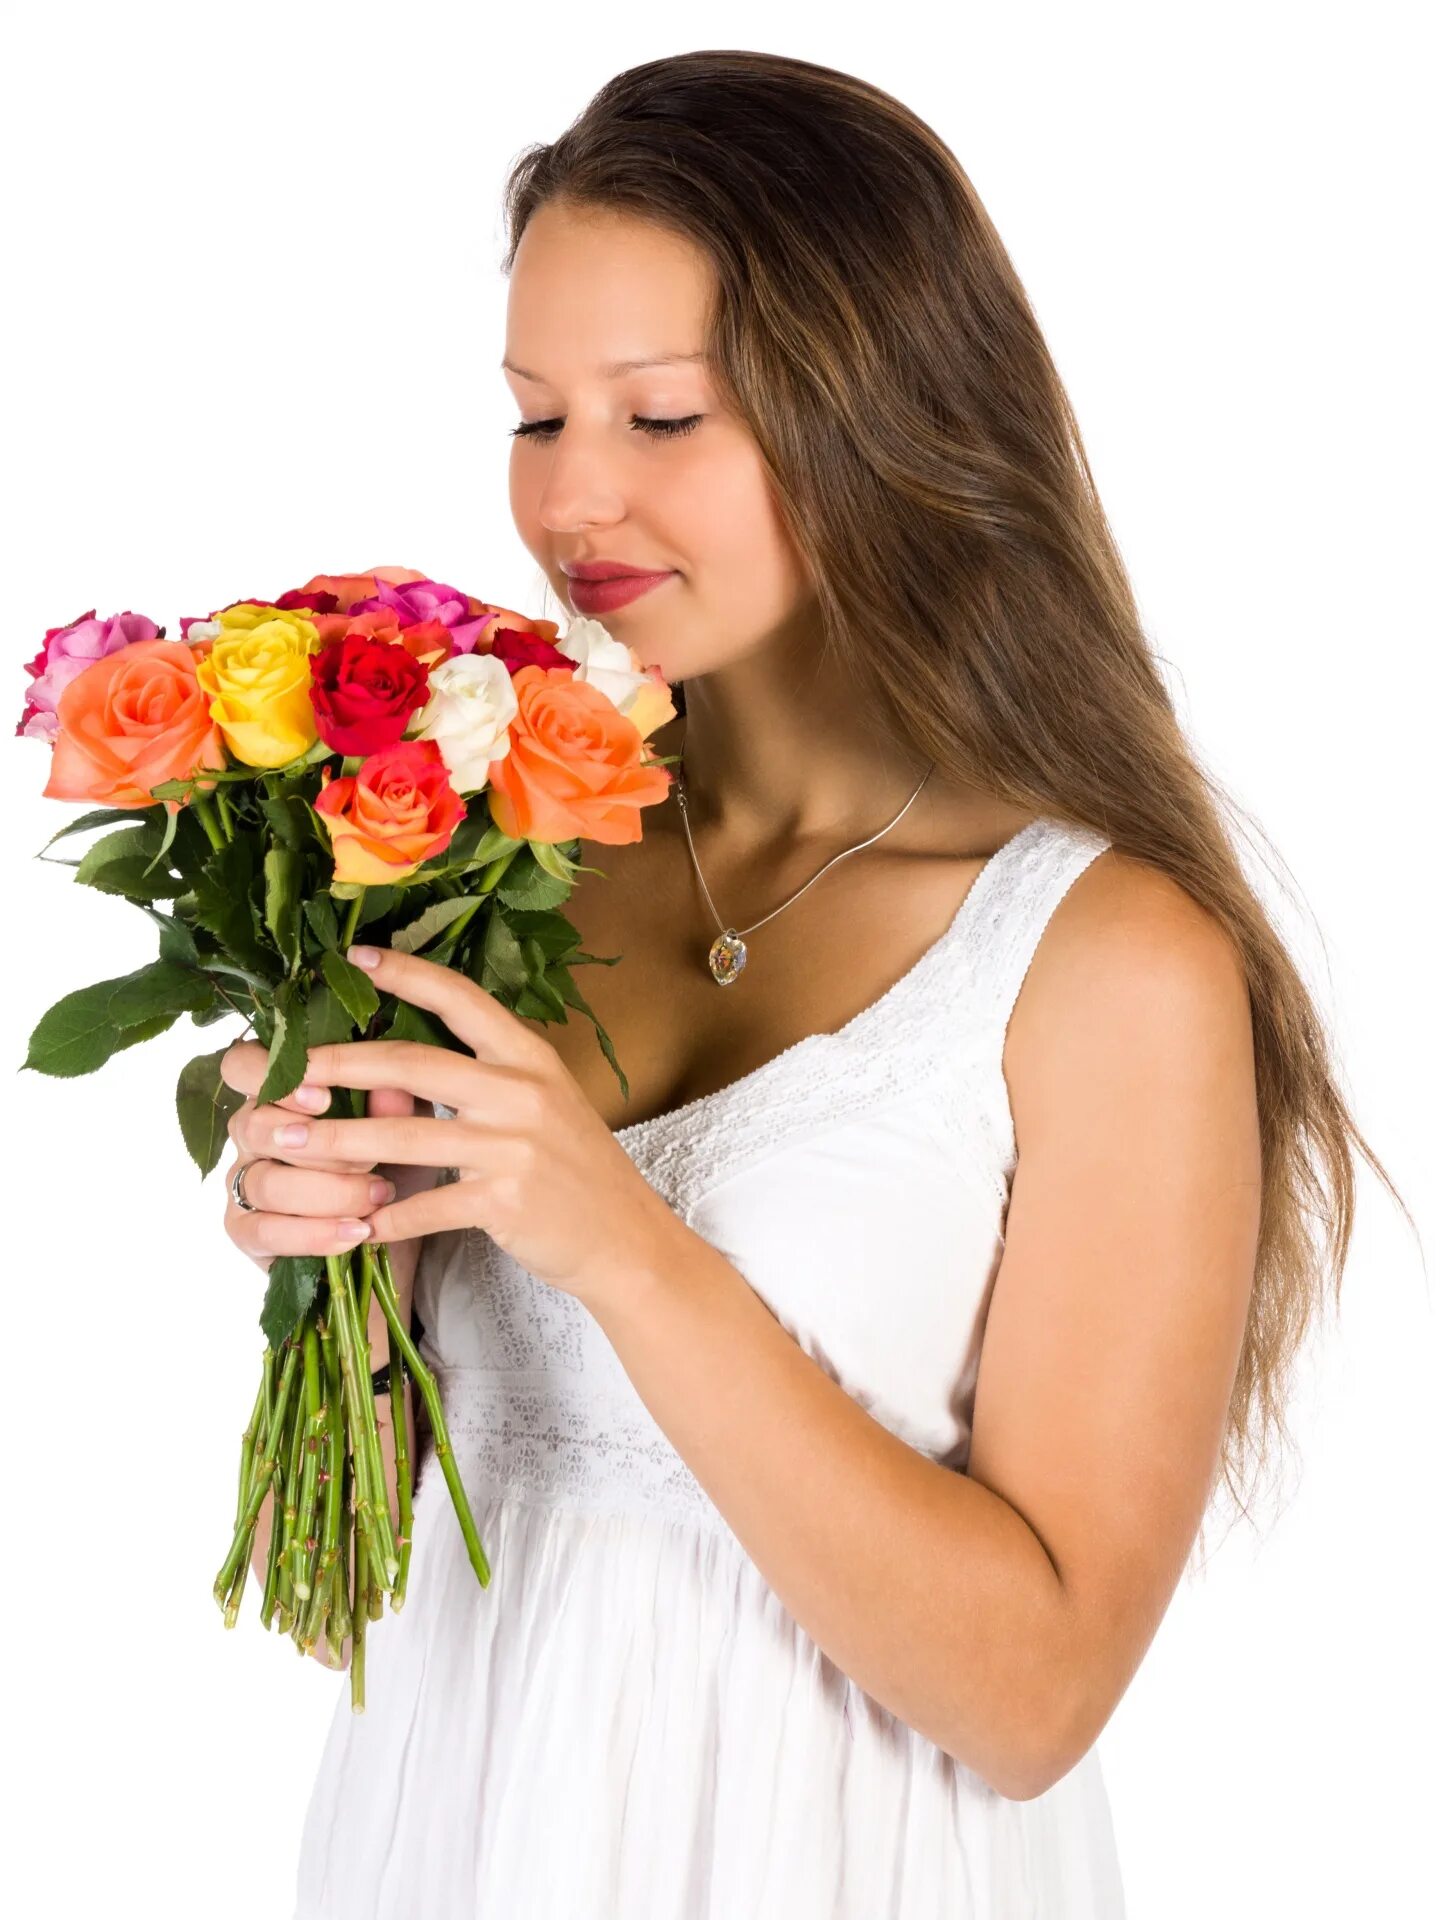 Букет "девушке". Букет цветов для женщины. Женщина с цветами. Женщина с букетом в руках.